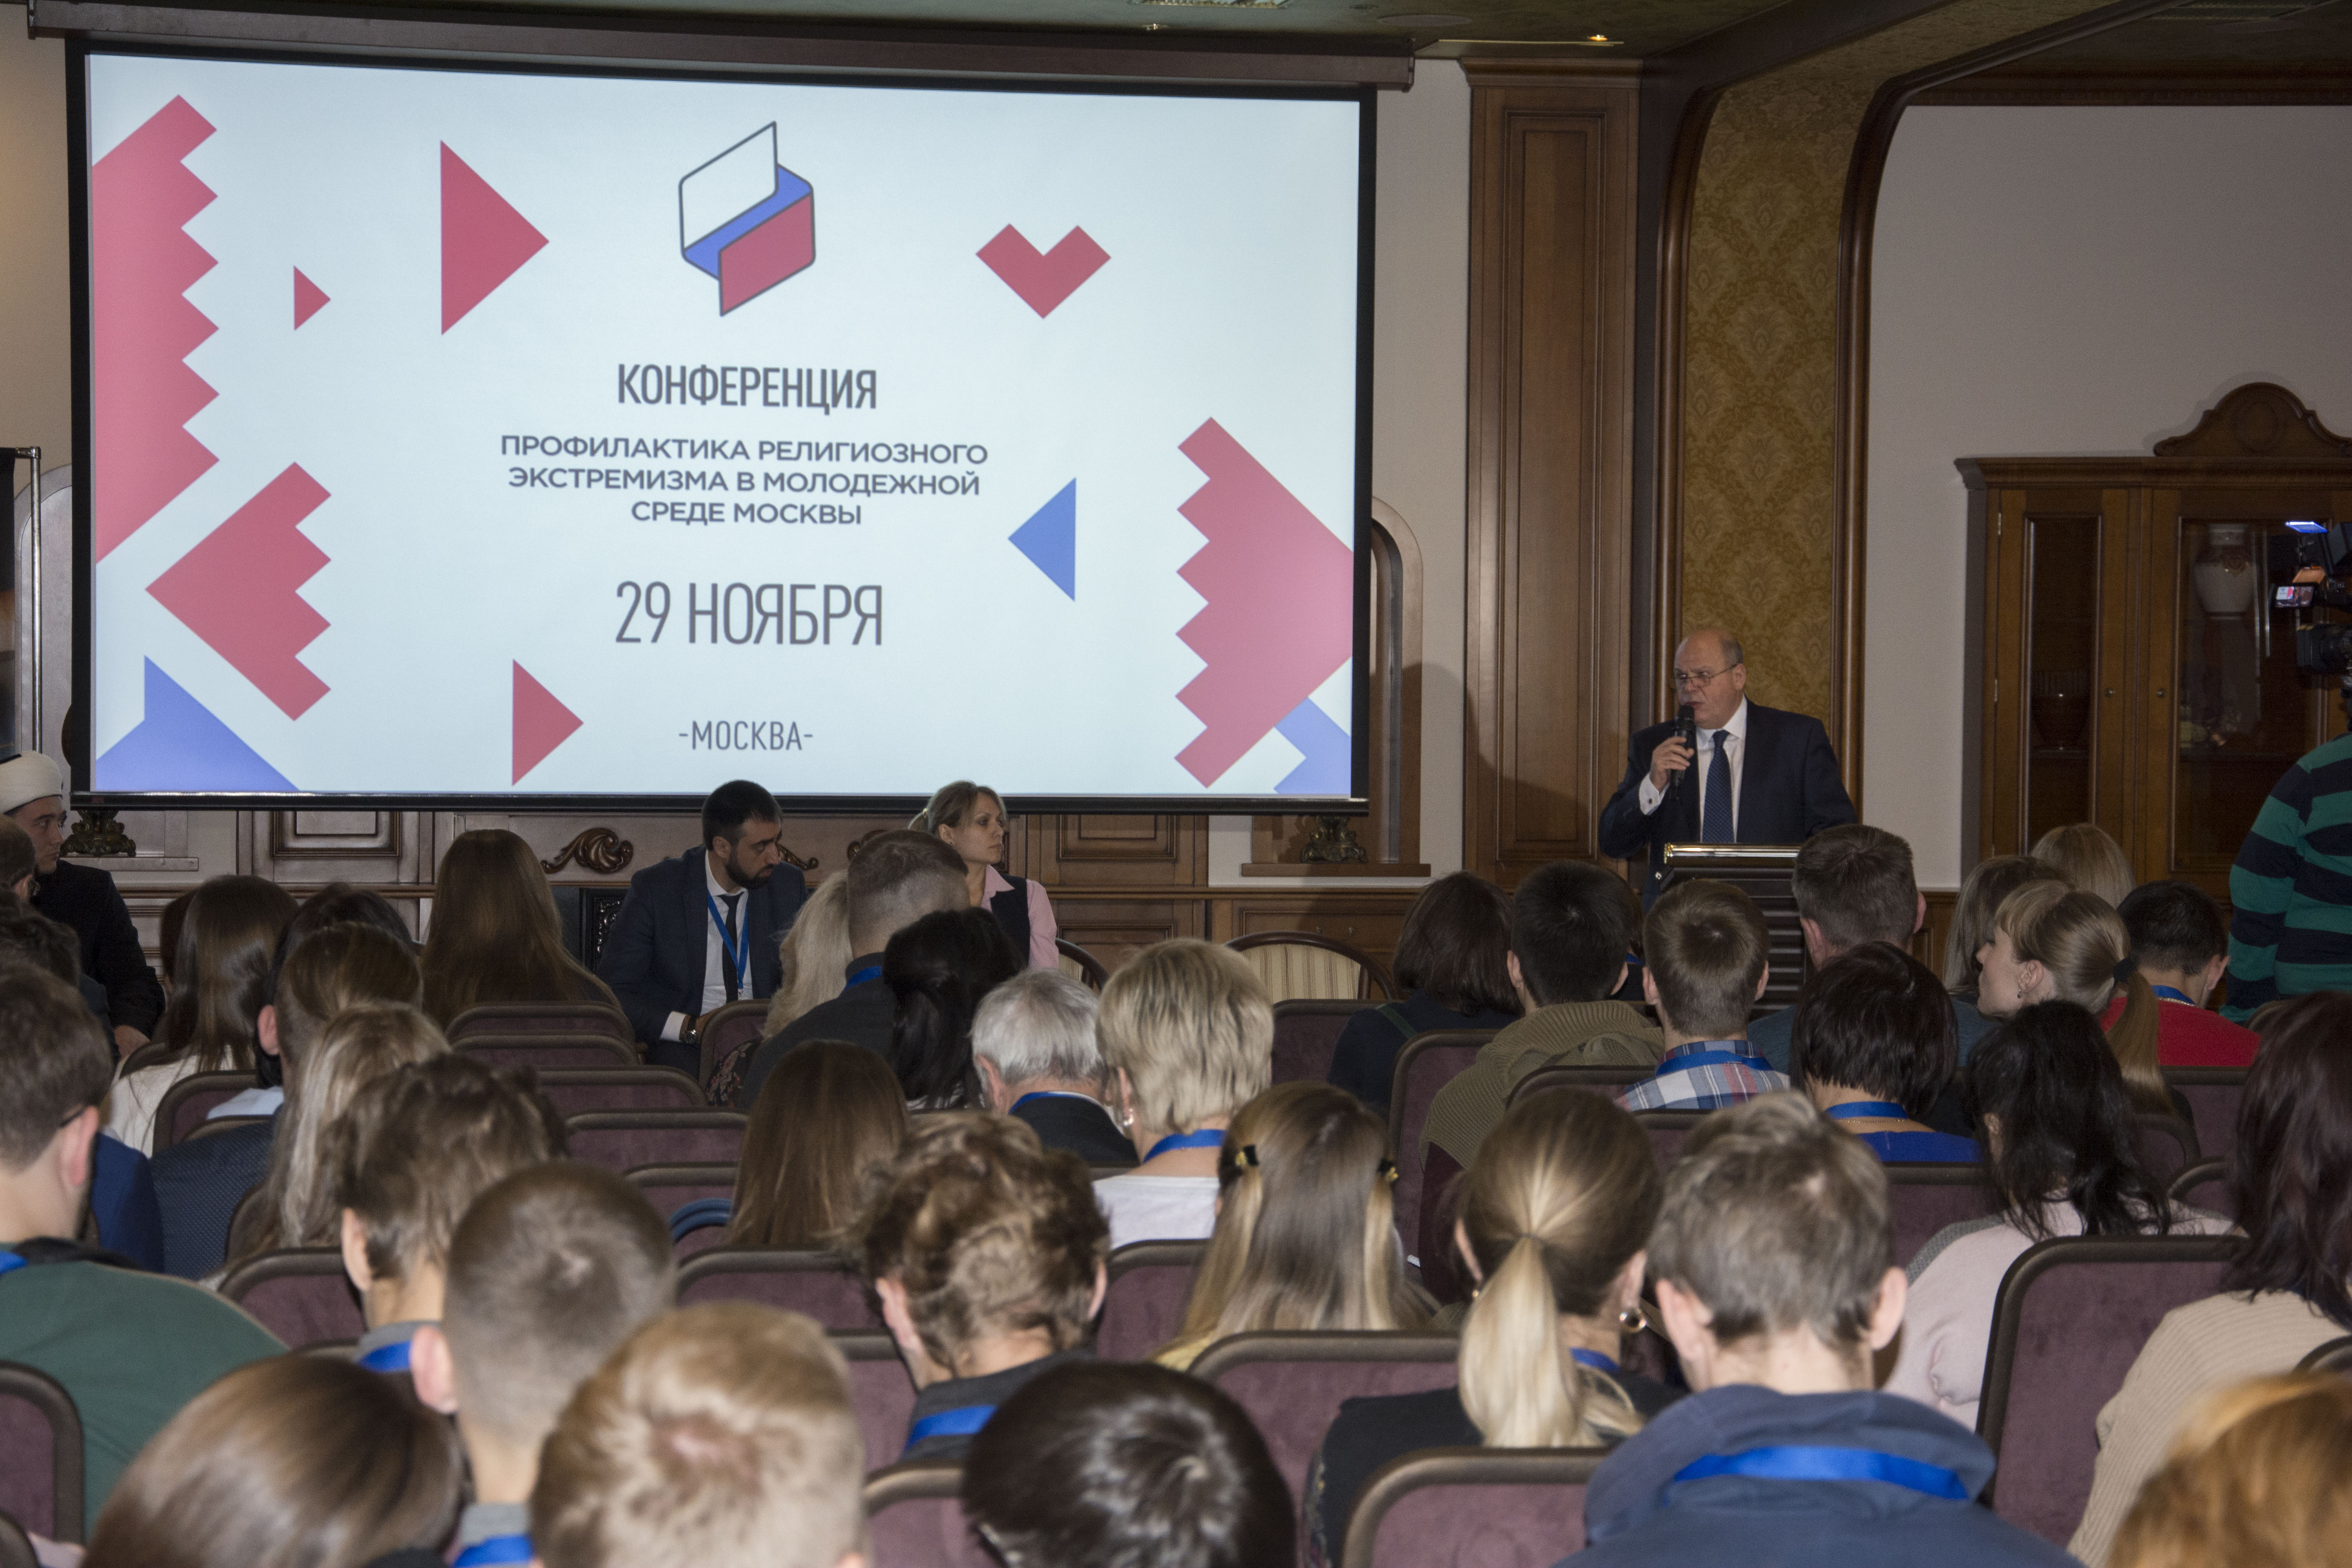 В Москве прошла конференция по профилактике религиозного экстремизма в молодежной среде Москвы